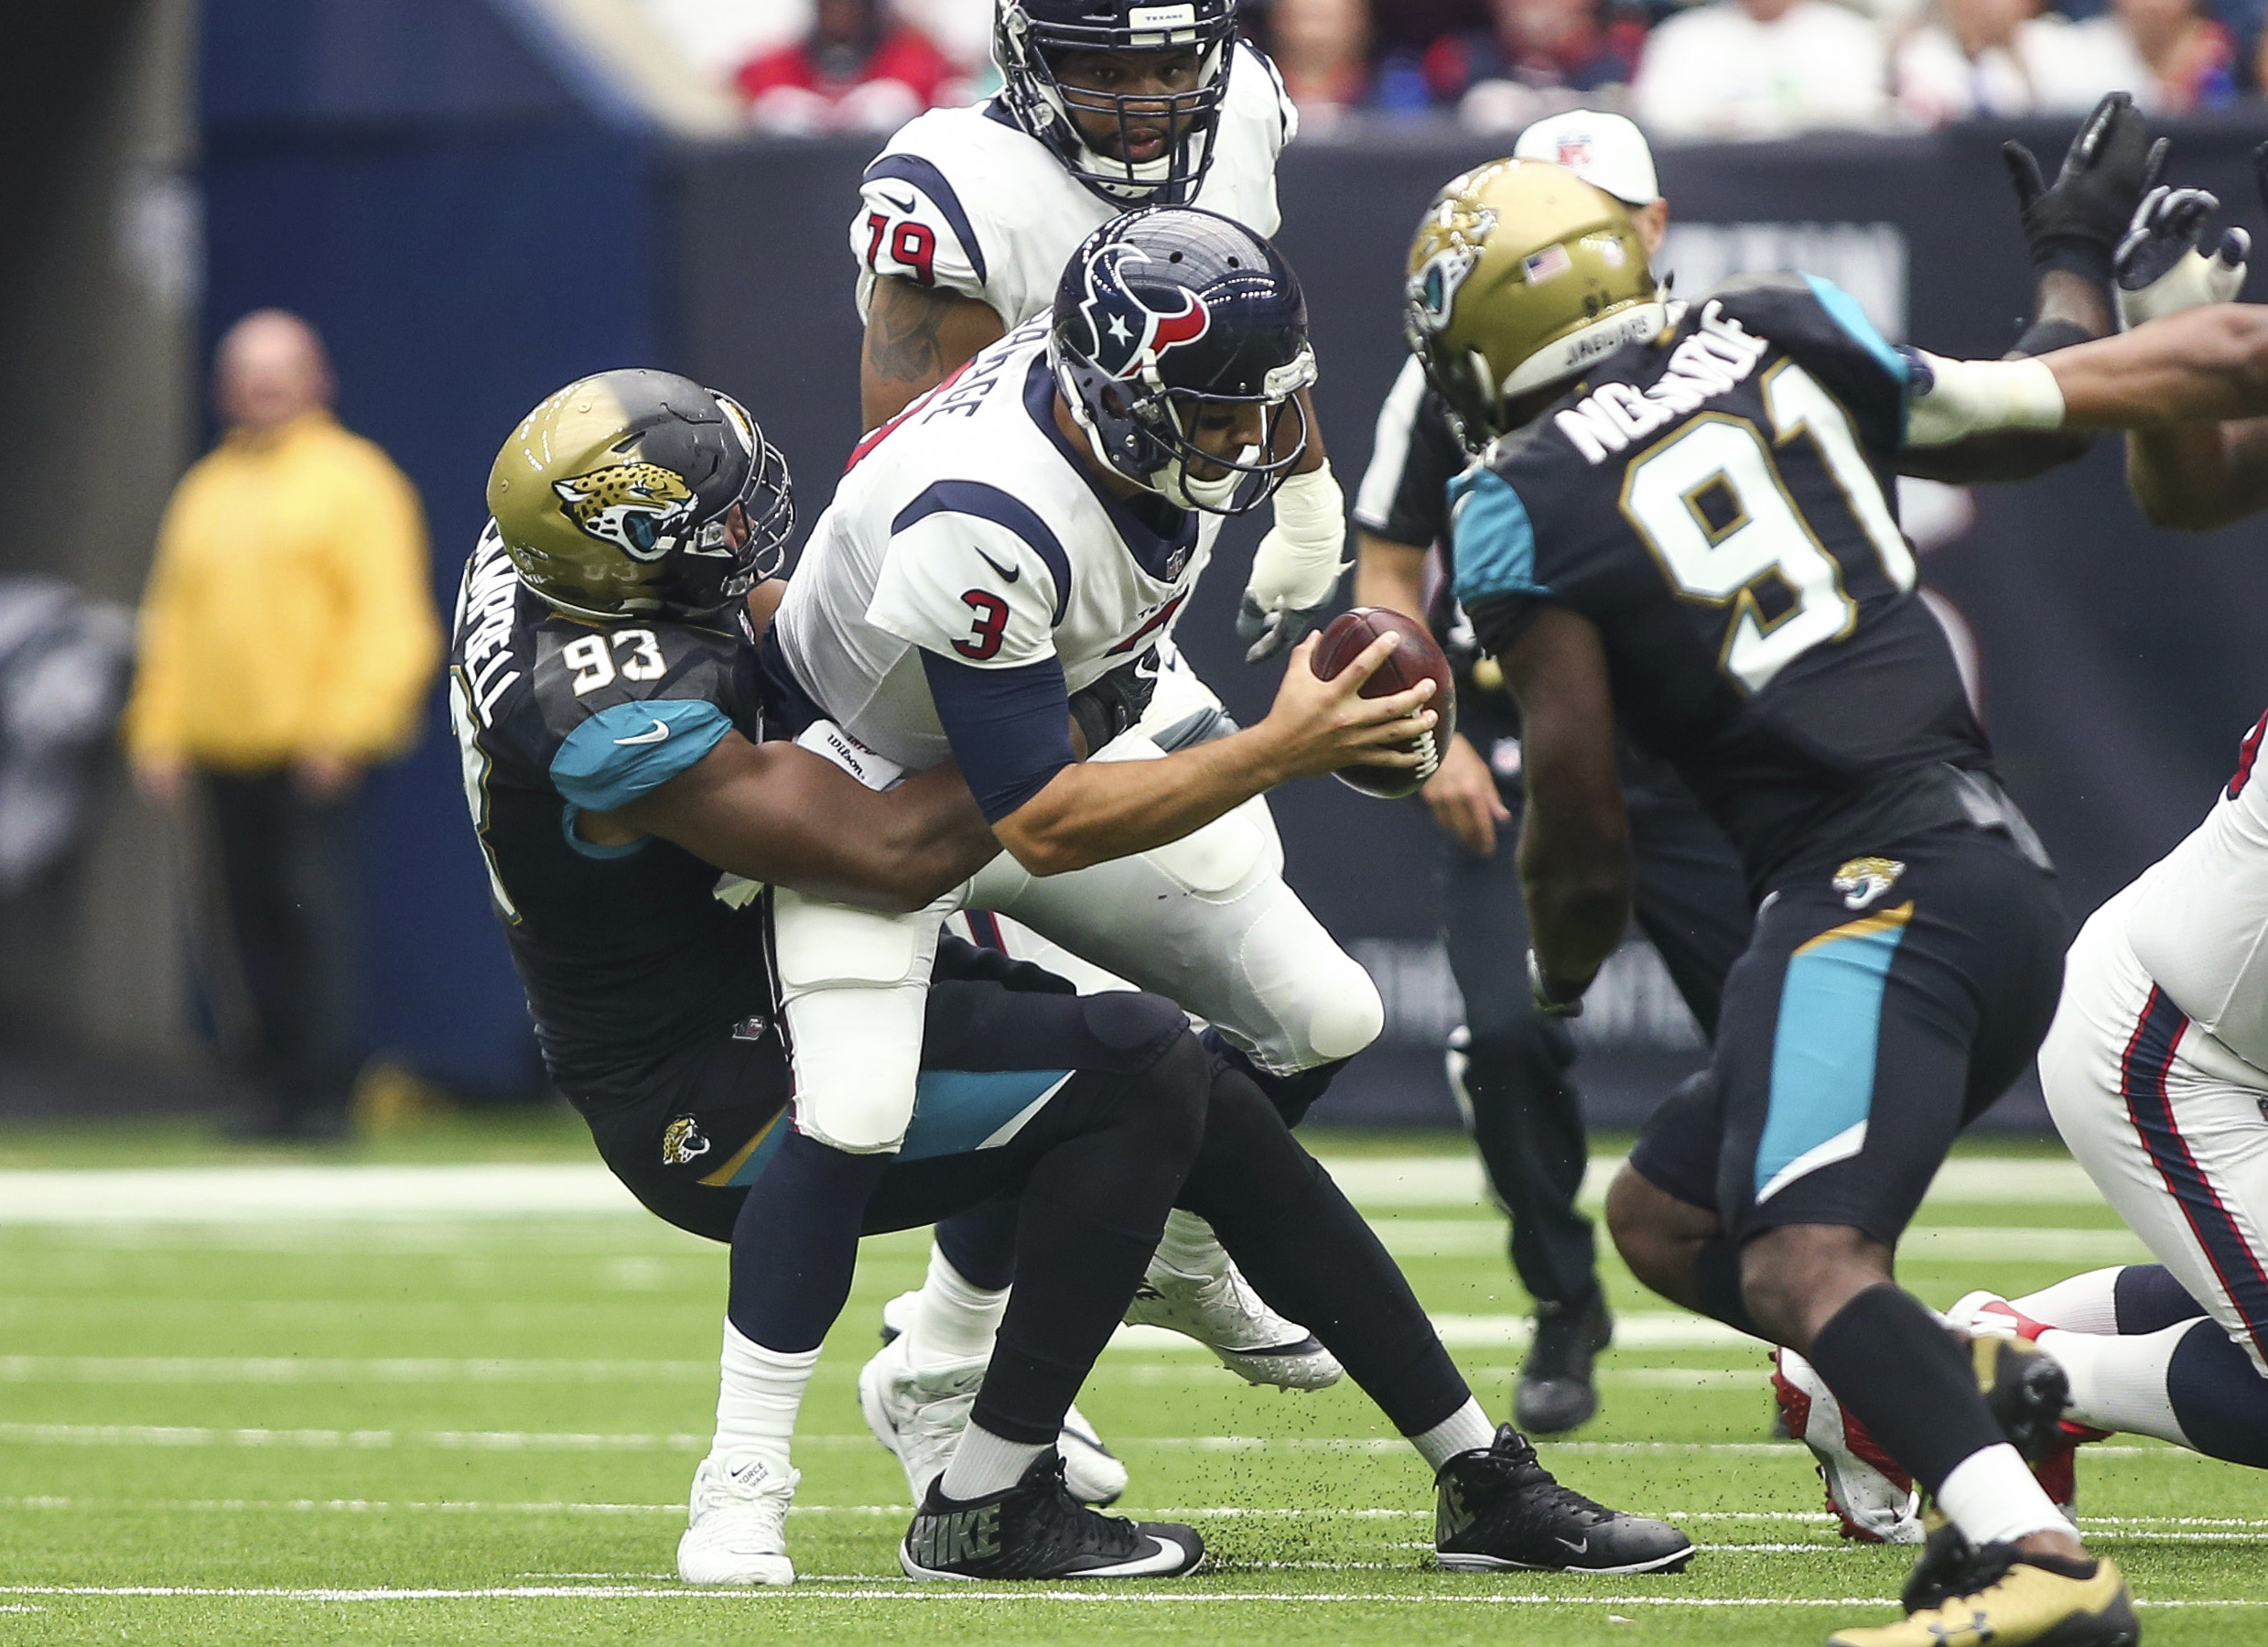 HOUSTON, TX - SEPTEMBER 12: Jacksonville Jaguars defensive back